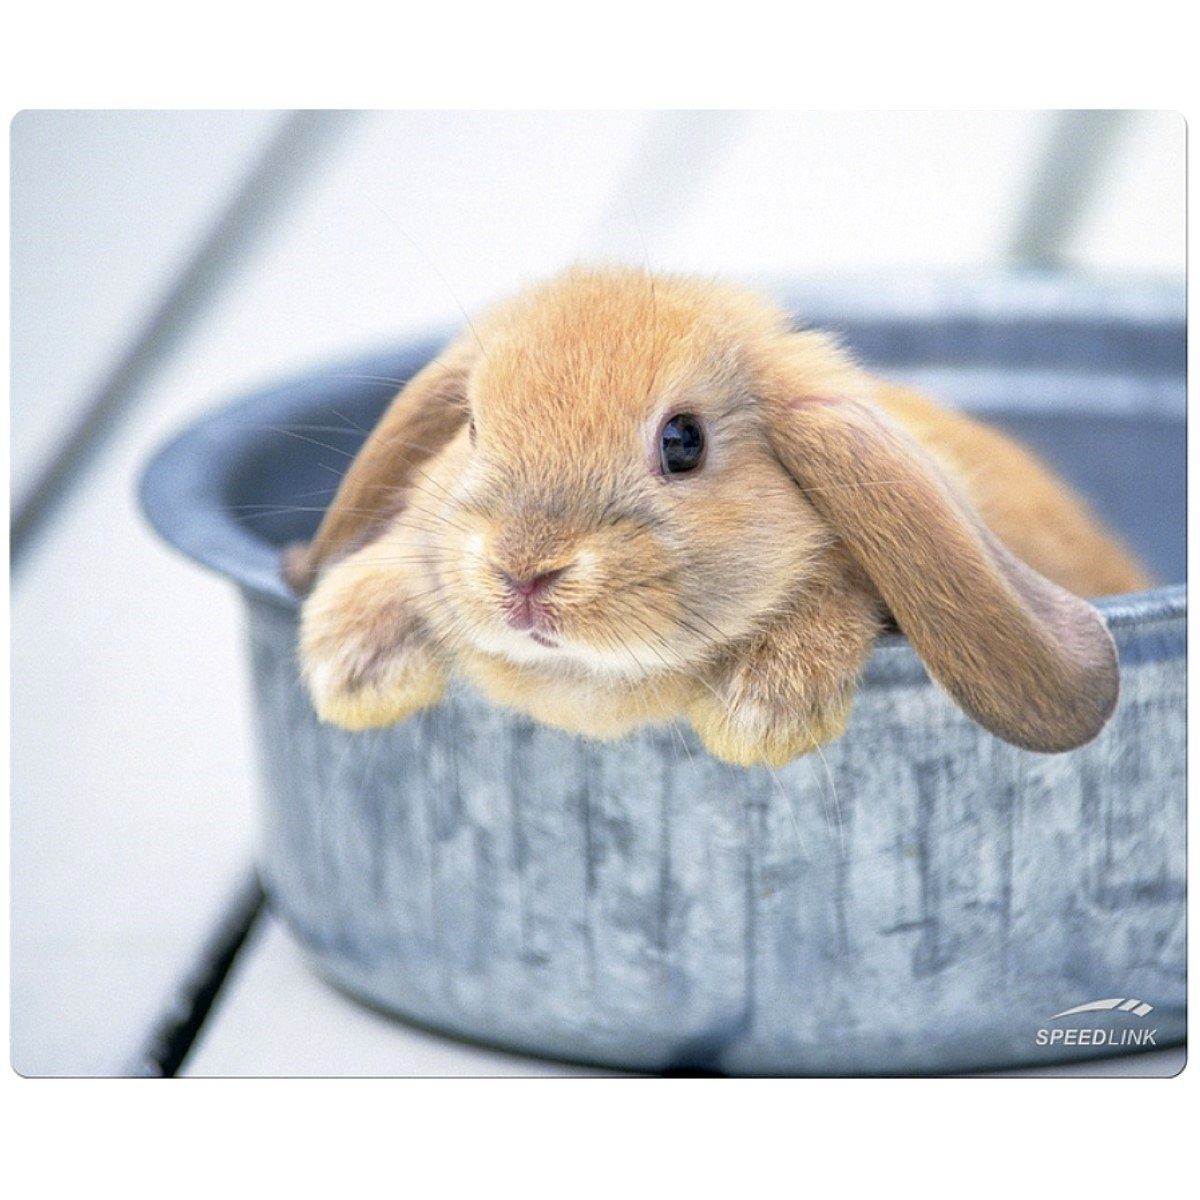 Speedlink Mauspad Mouse-Pad Maus-Pad Motiv Rabbit dünn 1,5mm, Baby Hase, Mouse Maus Pad dünn, rutschfest, flach, Textil-Oberfläche